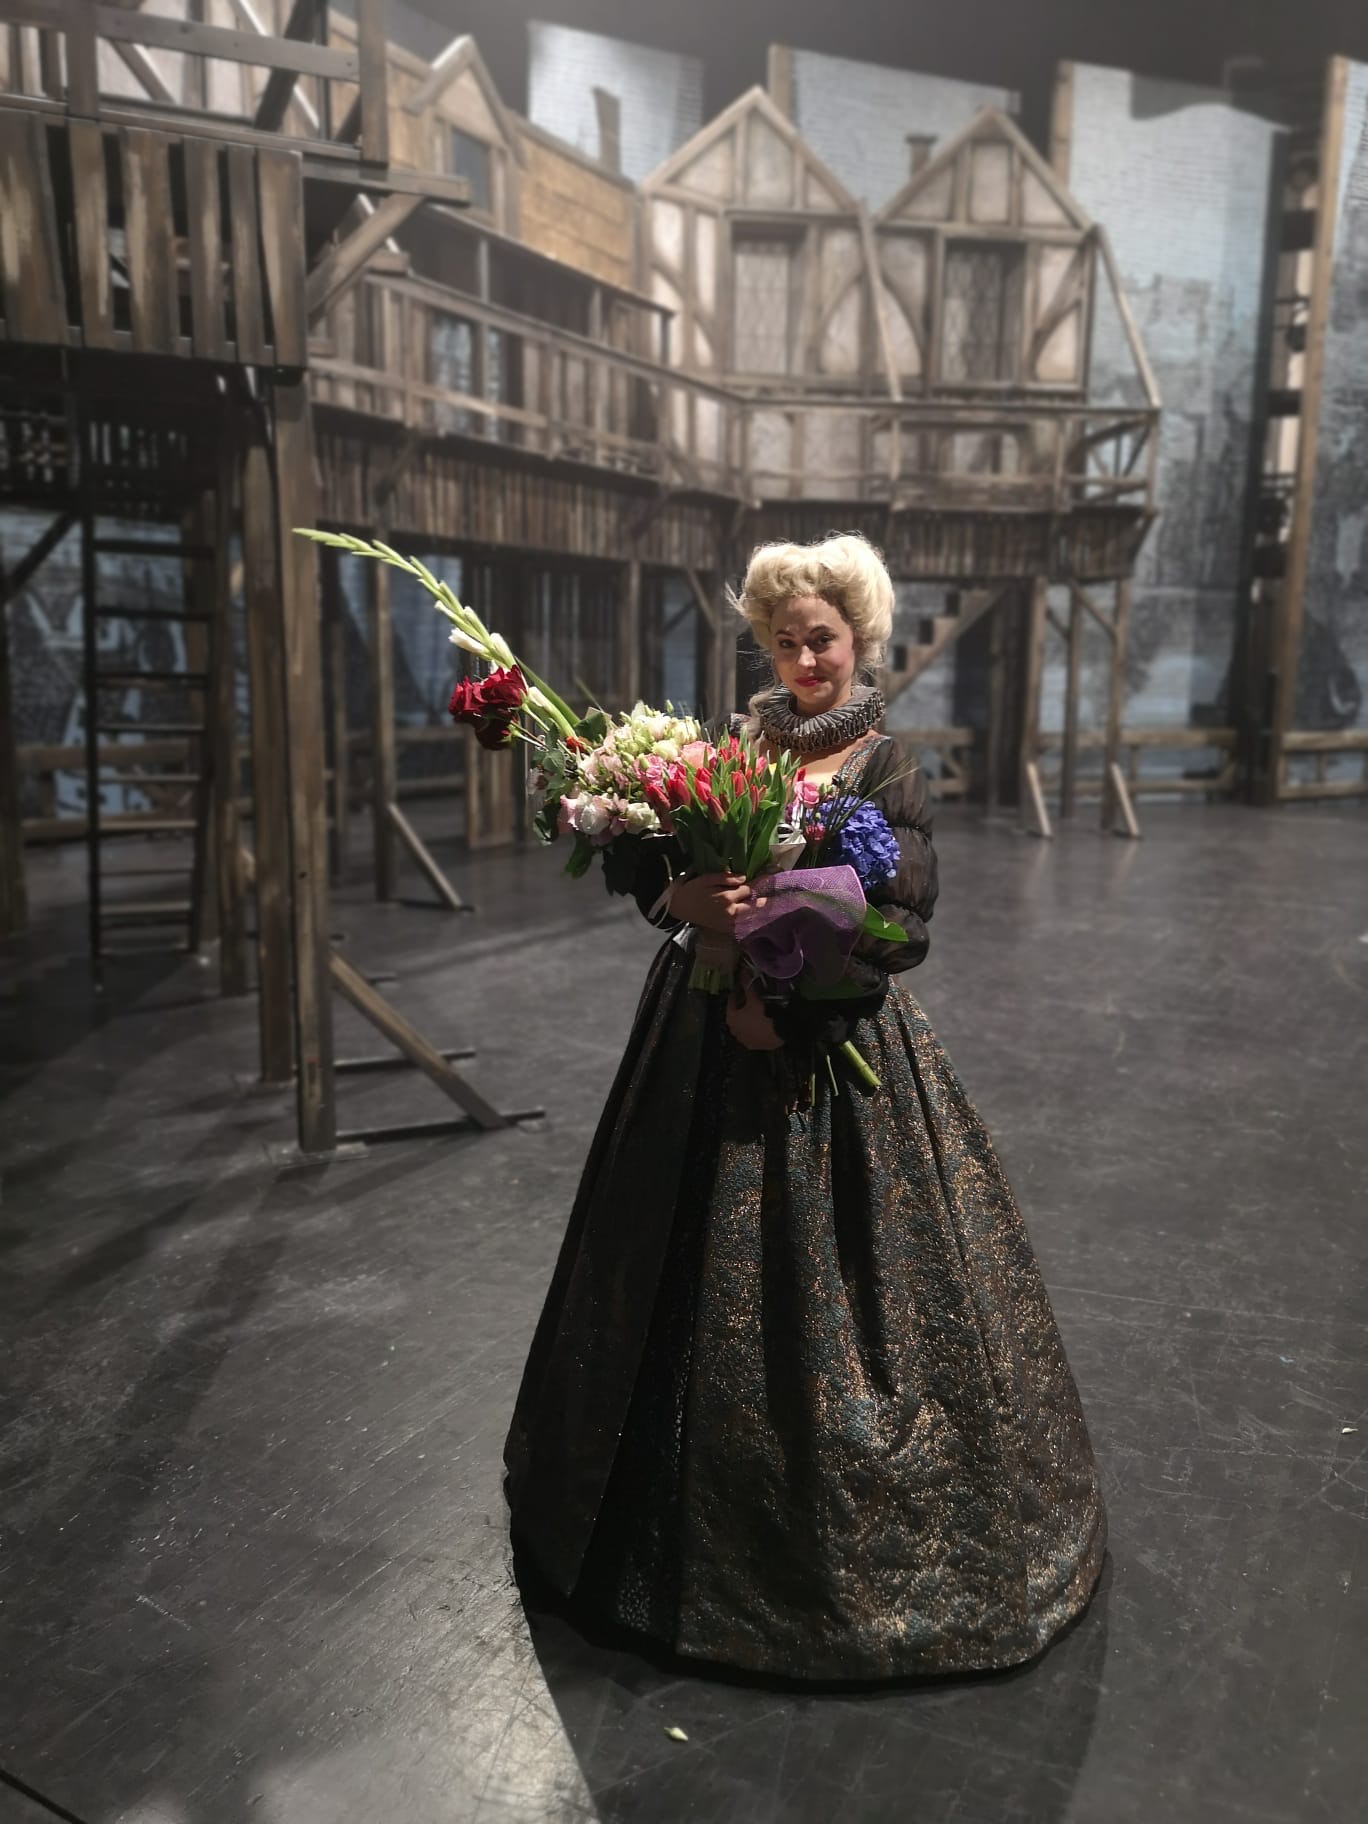 Agnieszka Zalas na scenie w teatrze. Ubrana w długą suknię, w rękach trzyma kwiaty. Na głowie ma perukę.